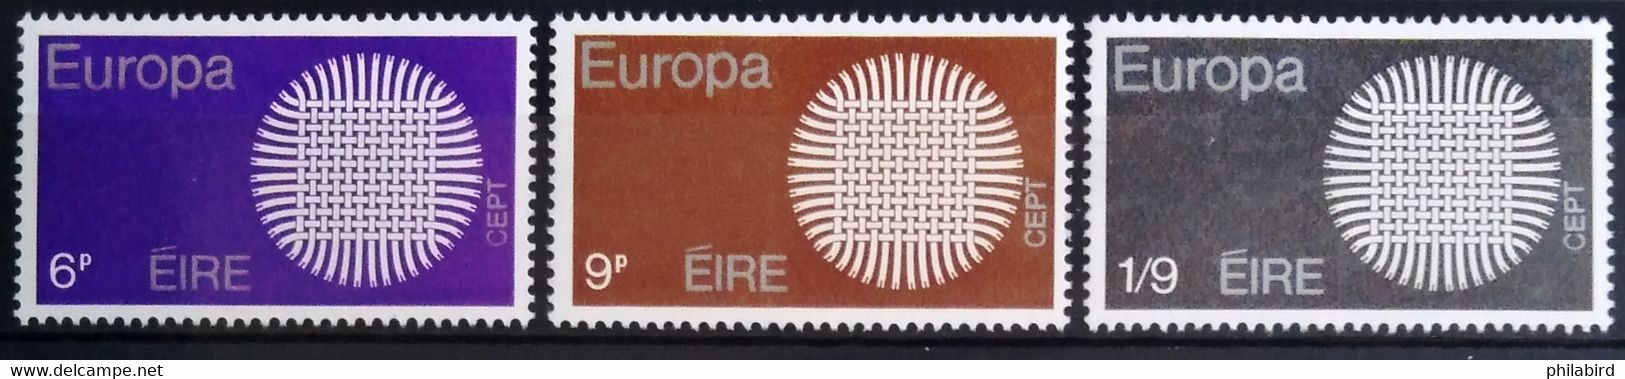 EUROPA 1970 - IRLANDE                    N° 241/243                       NEUF** - 1970